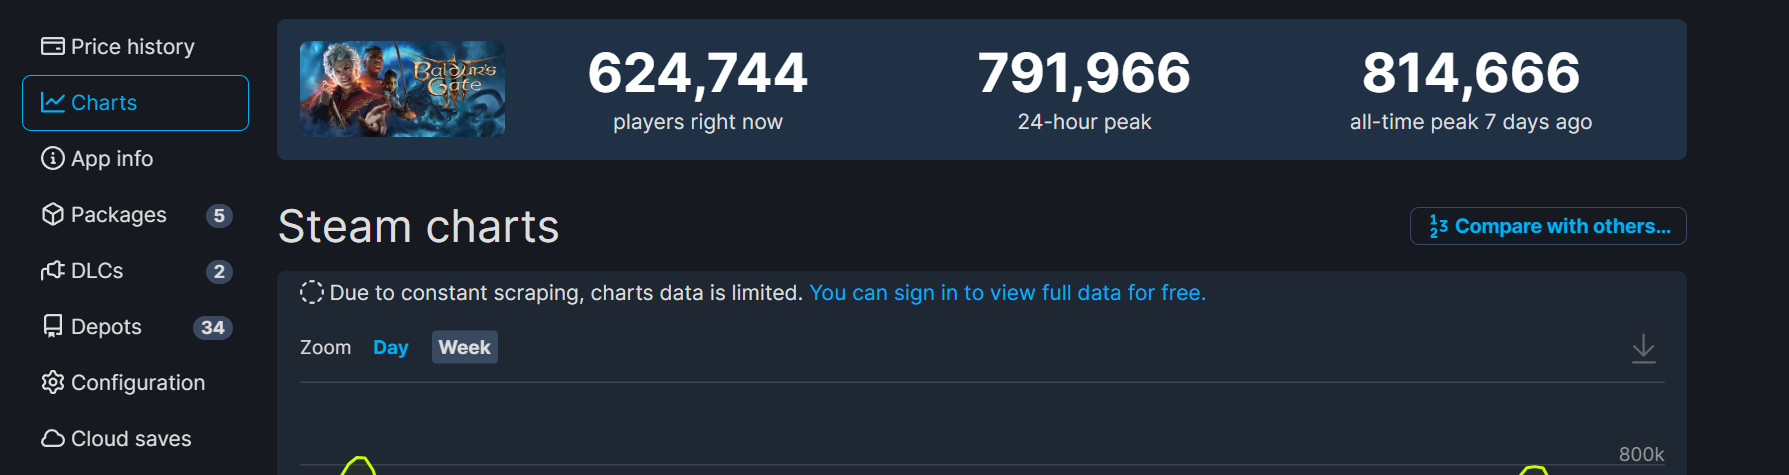 《博德之门3》粉丝组织登录游戏 希望能突破100万大关